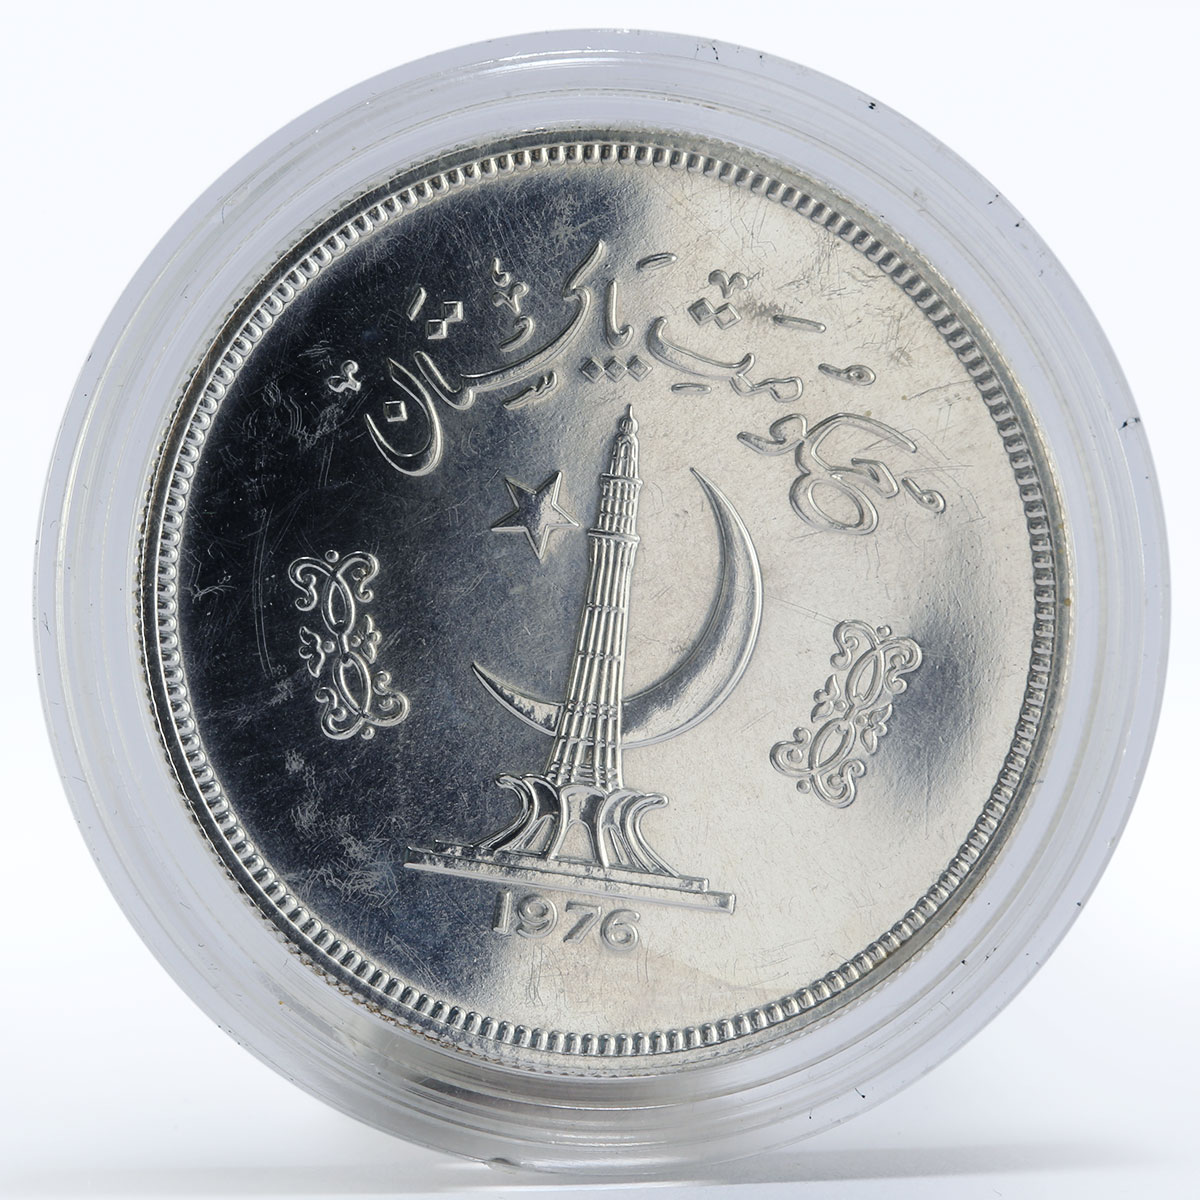 Pakistan 100 rupees Tropogan pheasant Bird Fauna silver coin 1976